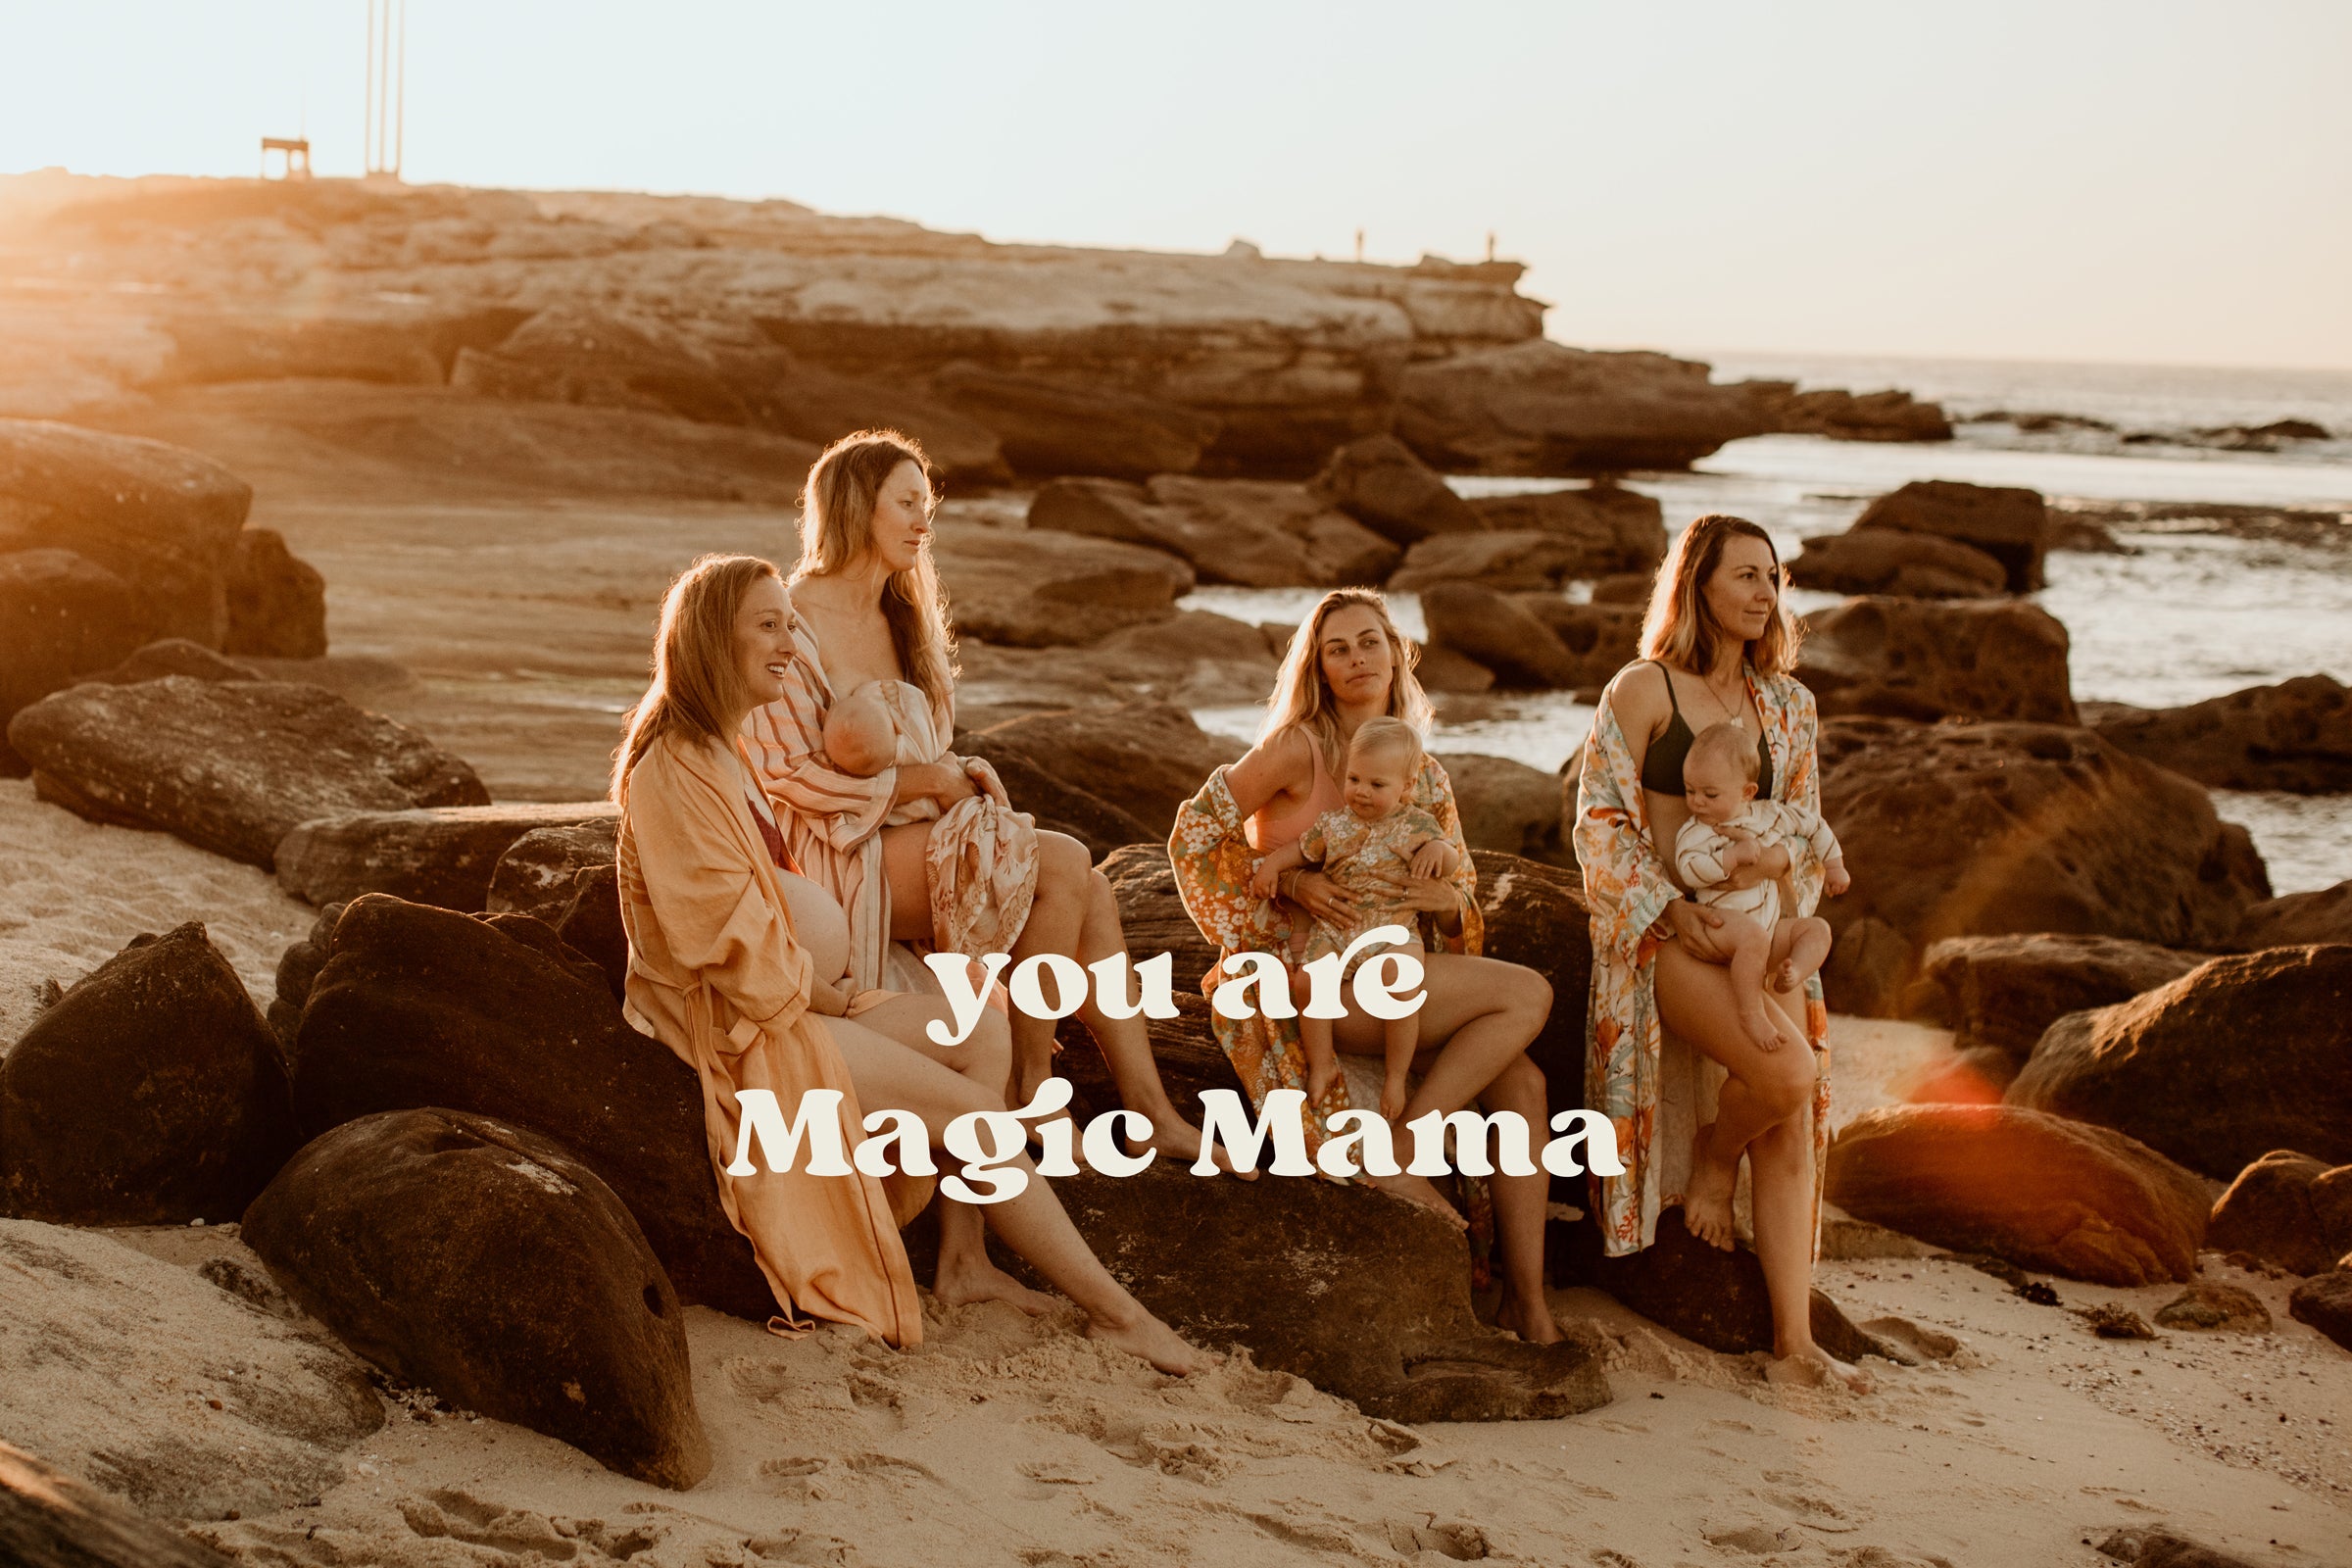 You are Magic Mama